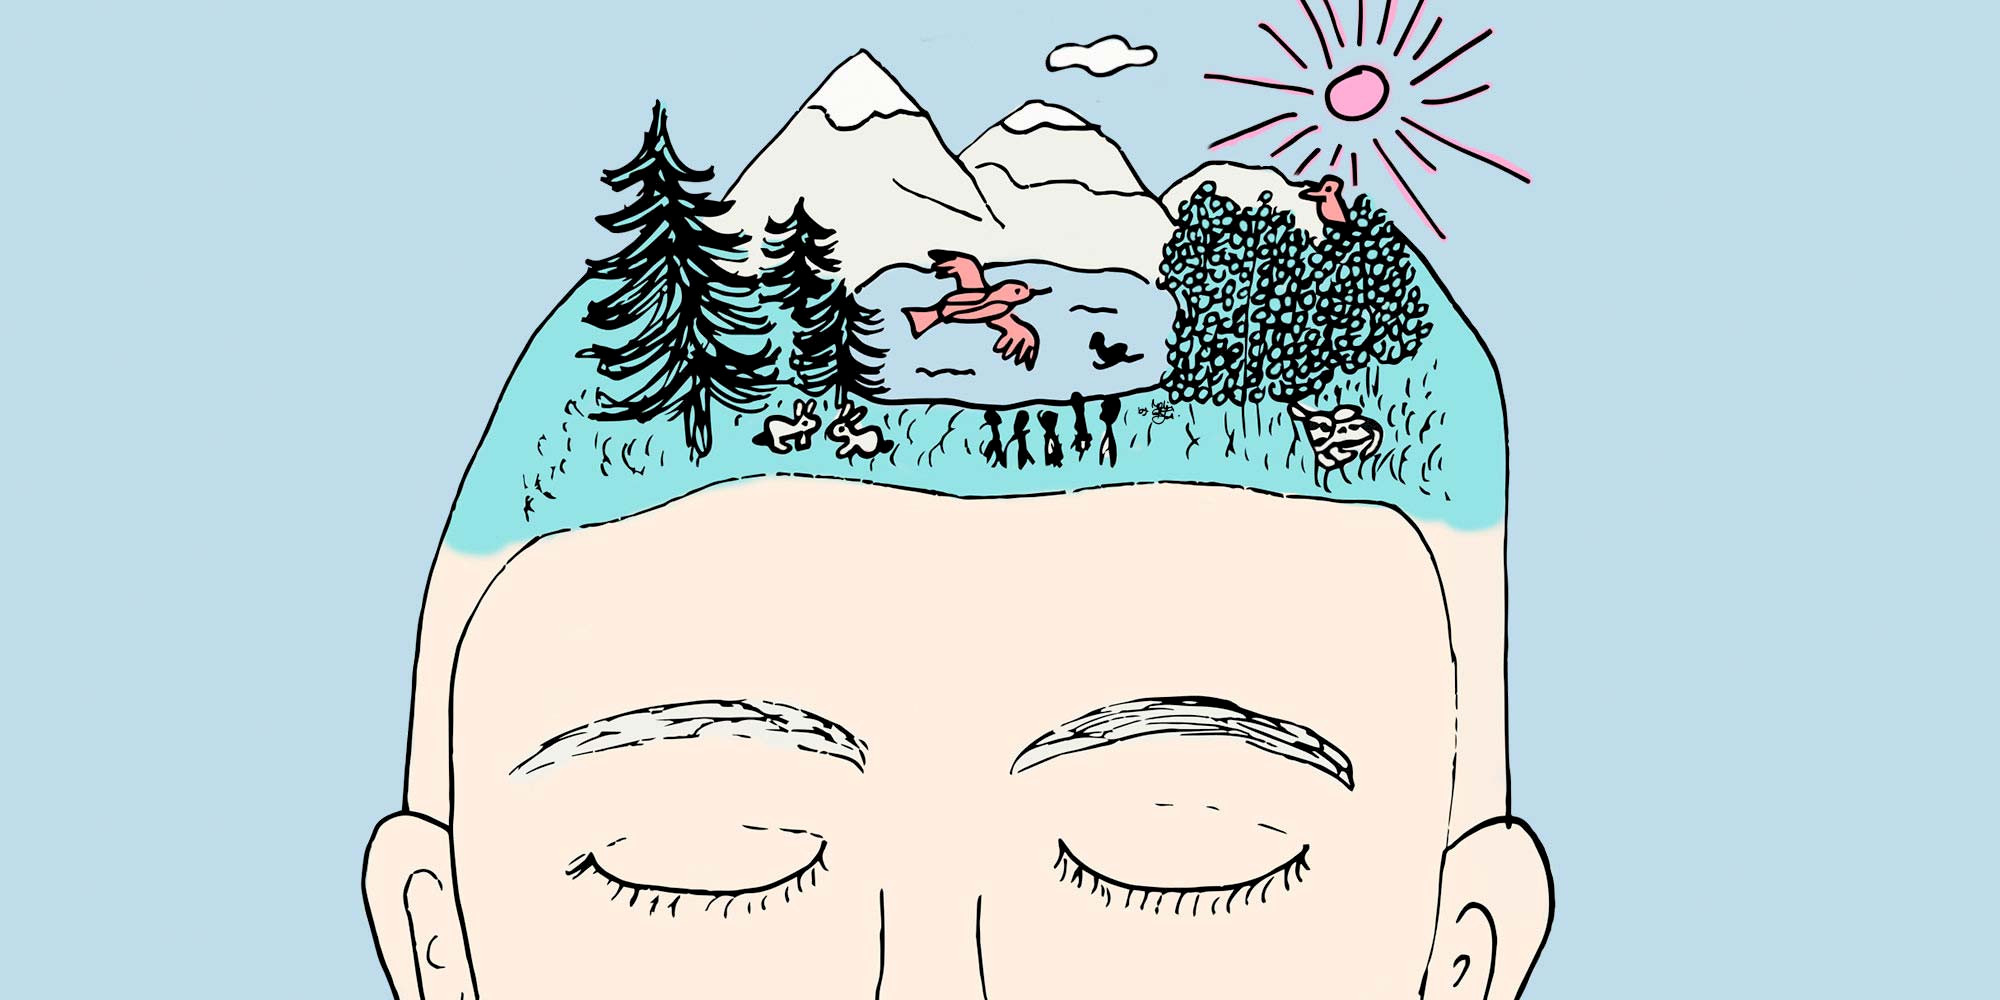 Illustration von Melanie Bütikofer, die ein Gesicht zeigt von einer Person mit geschloßenen Augen. Ihr Gehirn wird mit einer Fantasiewelt dargestellt, was symbolisch für die Gedankenwelt dieser Person steht. Passend zum Blogtext «Gedankenhygiene».